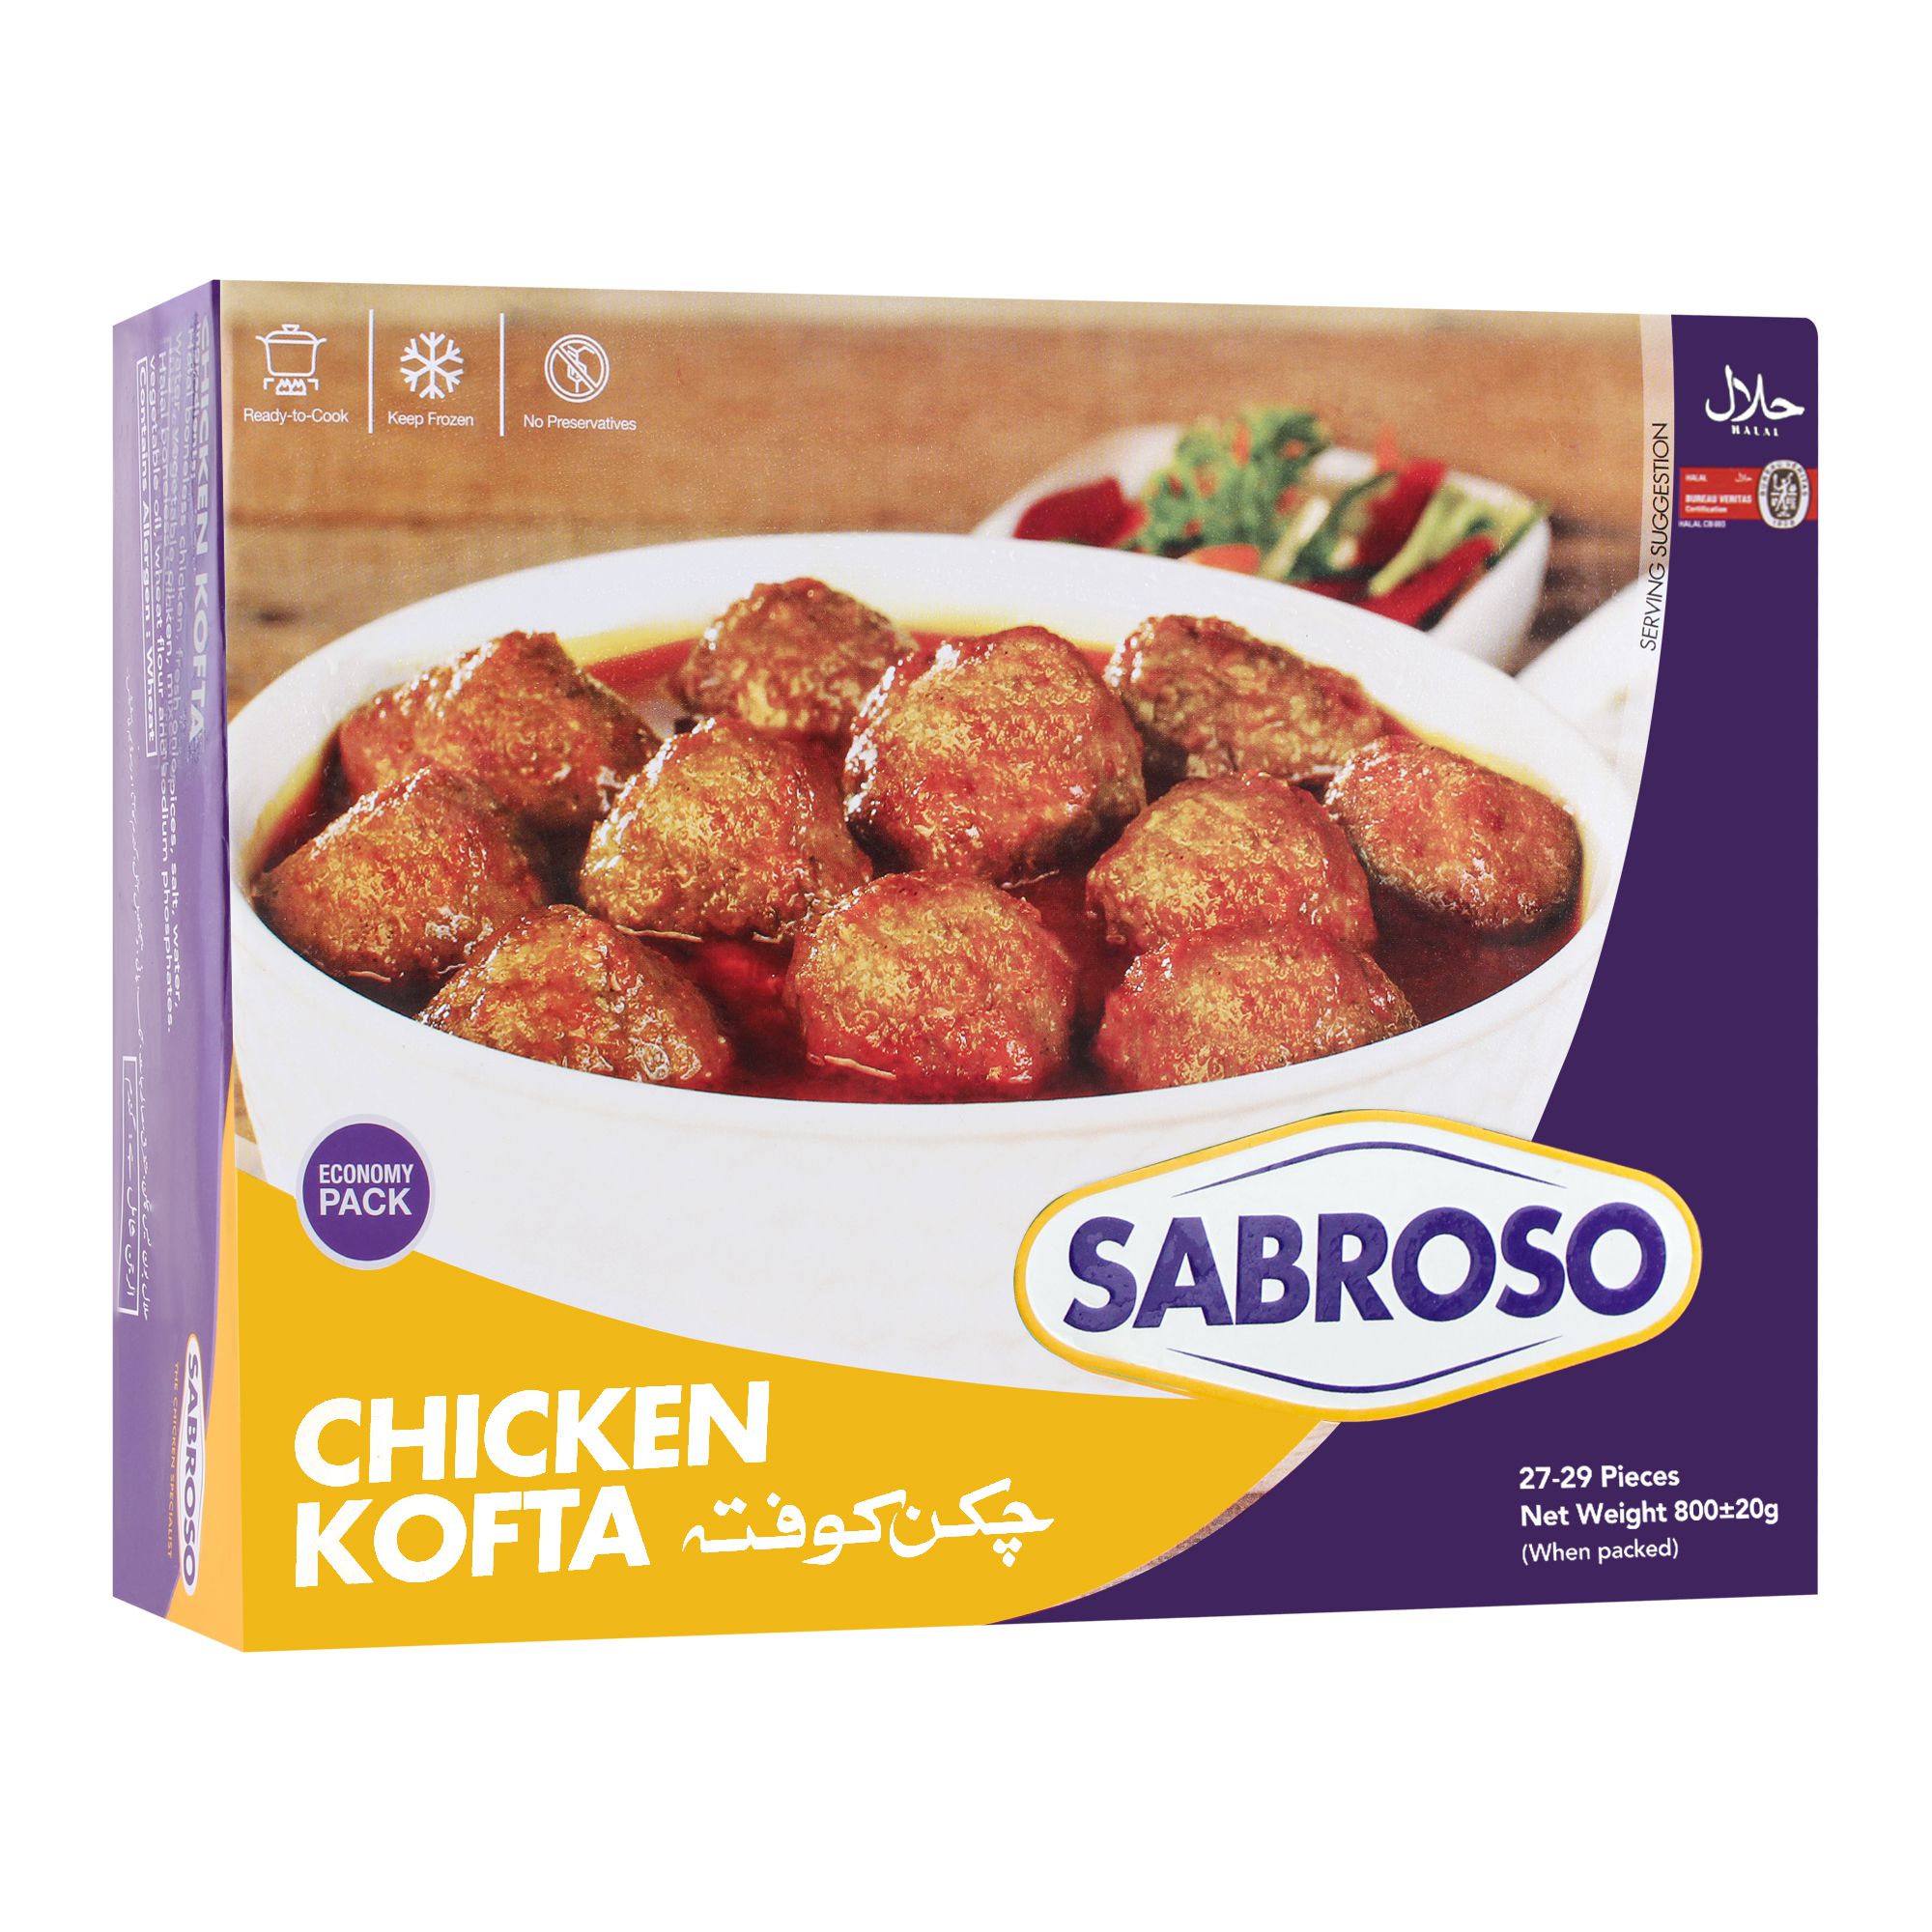 Sabroso Chicken Kofta 27-29 Pieces 800g